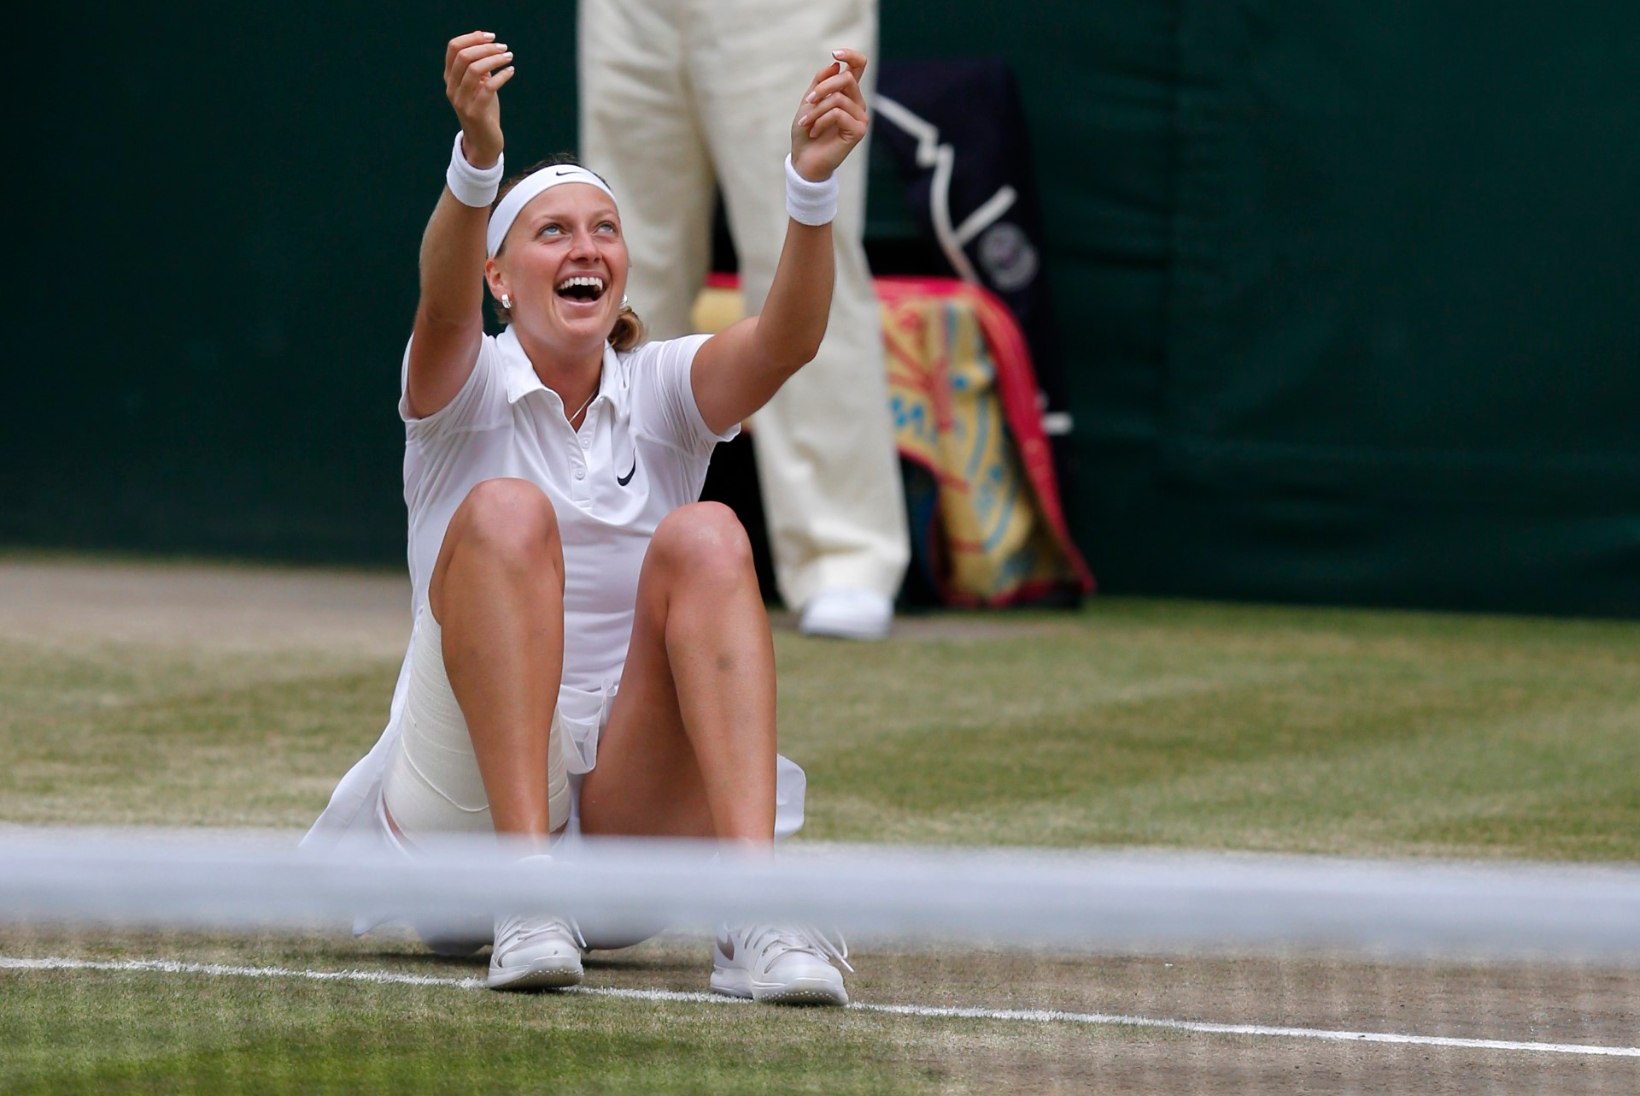 FOTOD: Petra Kvitova põrmustas Wimbledoni finaalis Kanada suurlootuse 